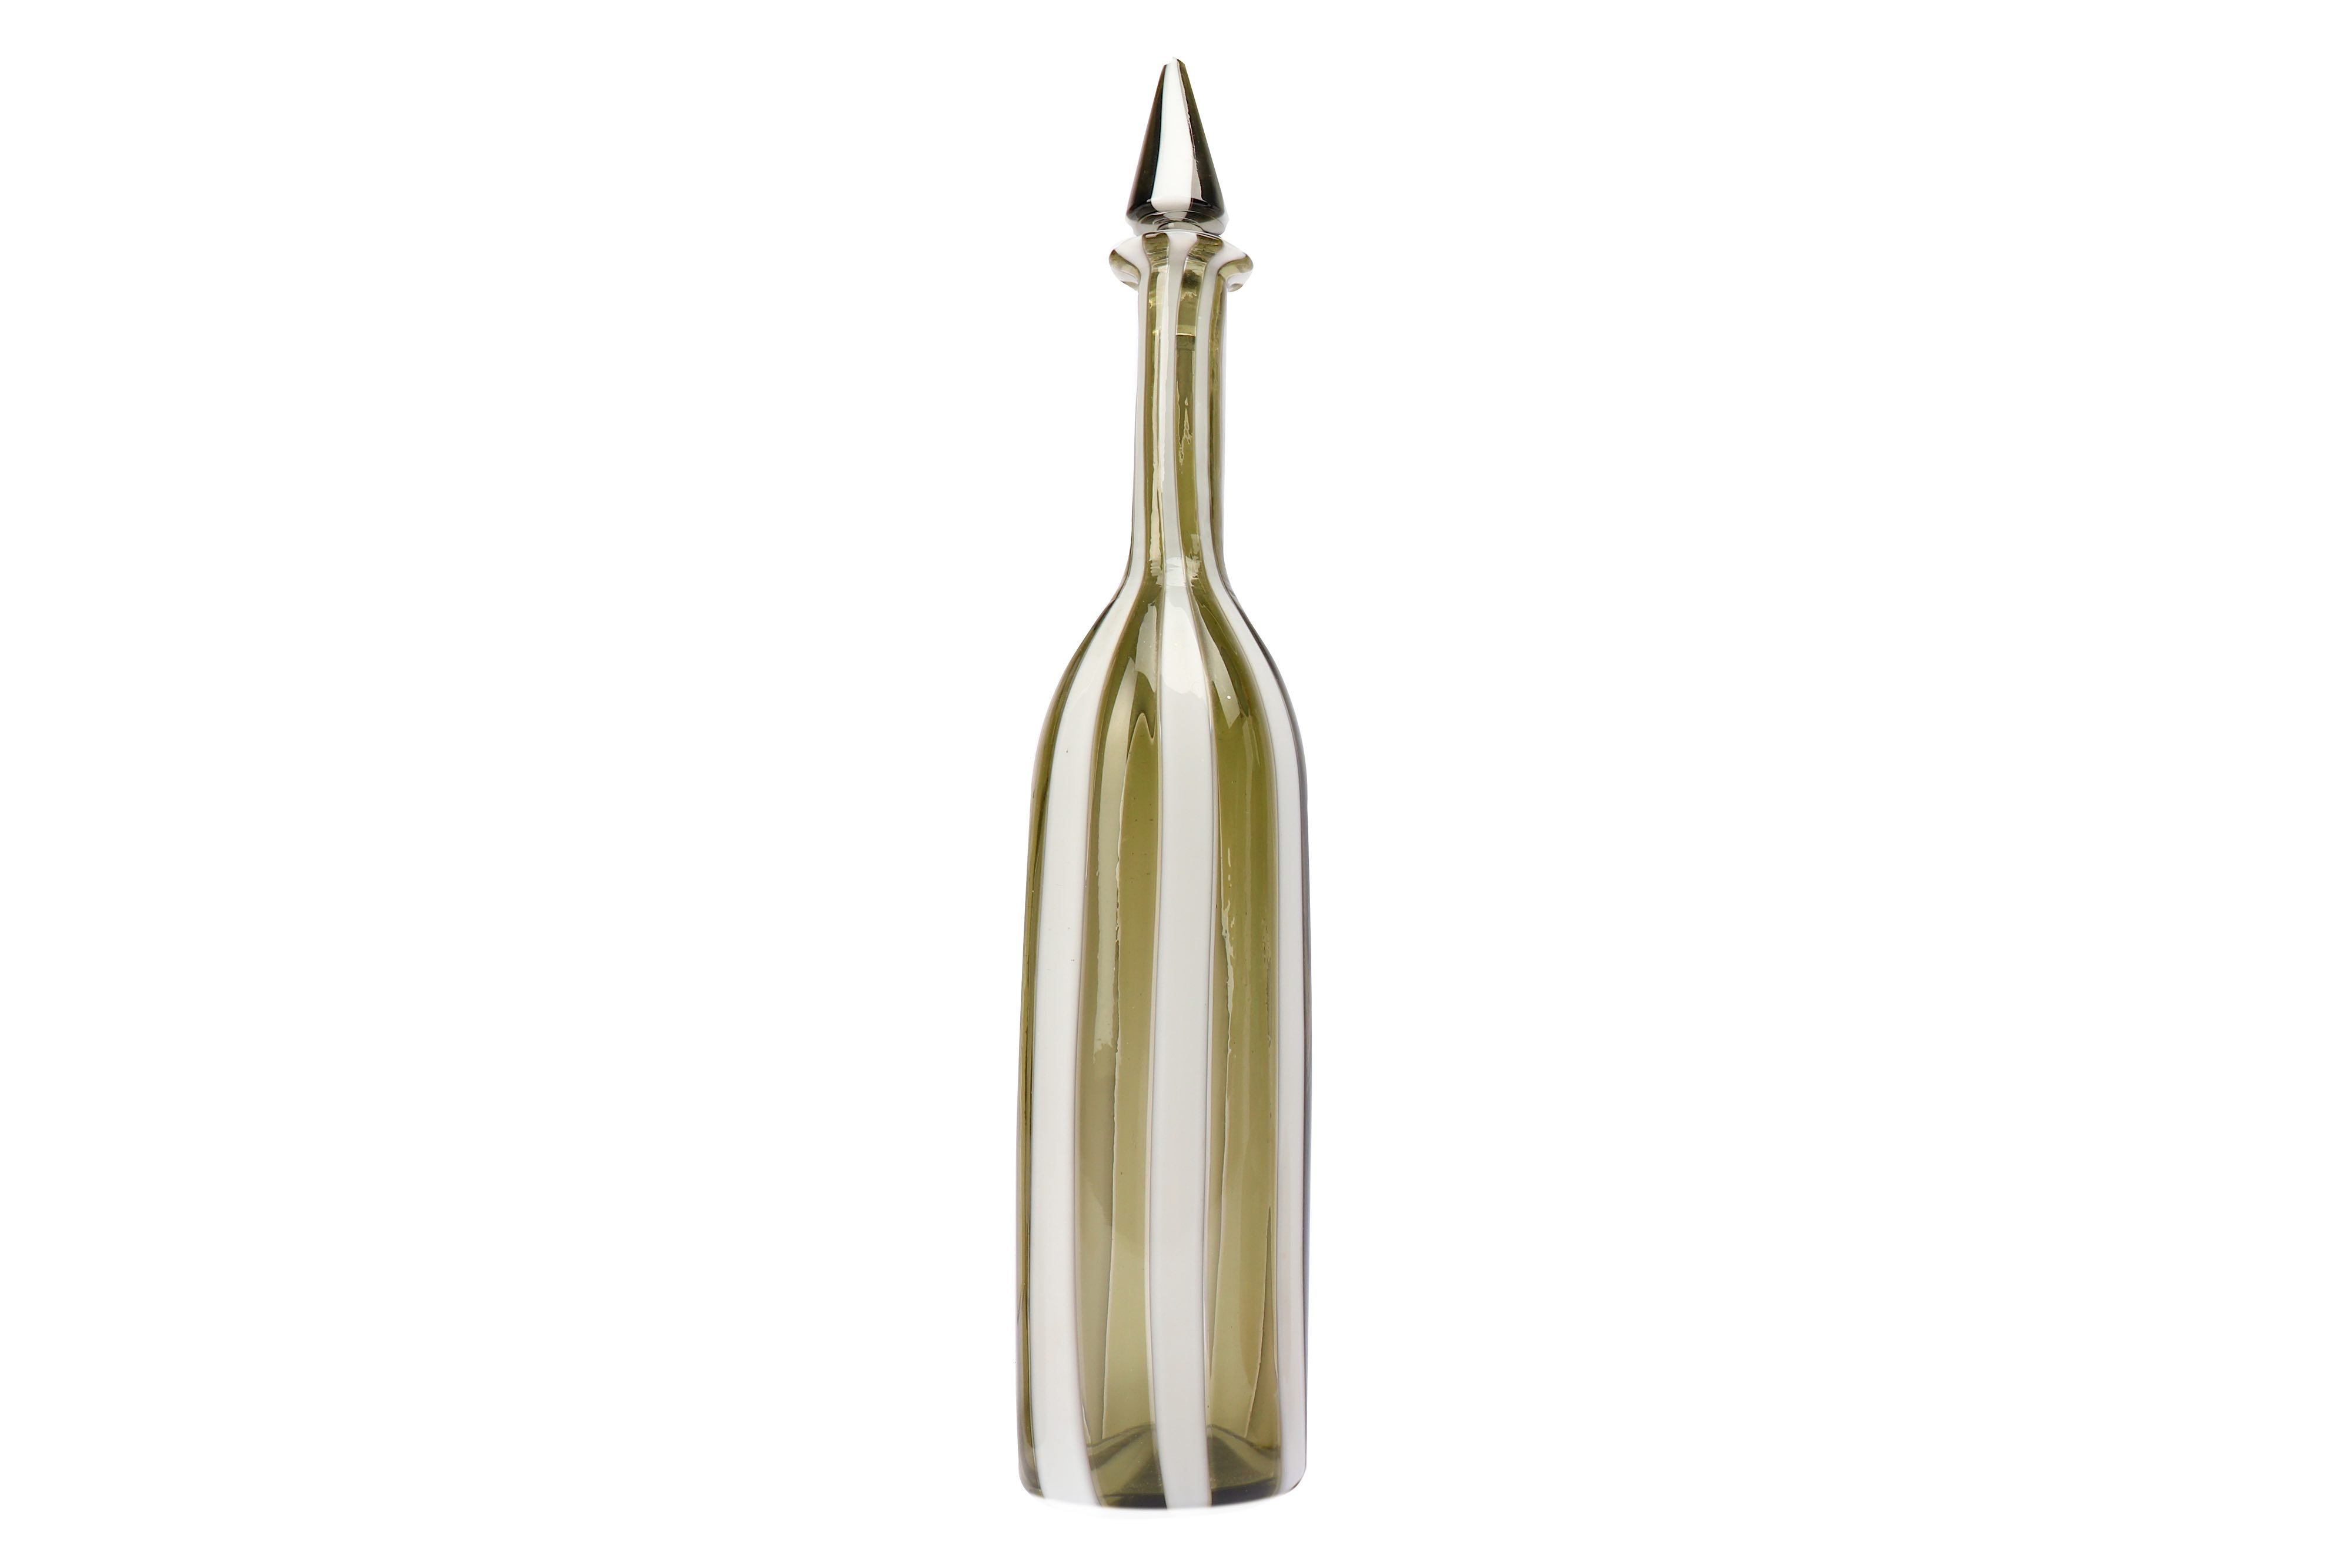 FULVIO BIANCONI for VENINI: A blown glass bottle and stopper